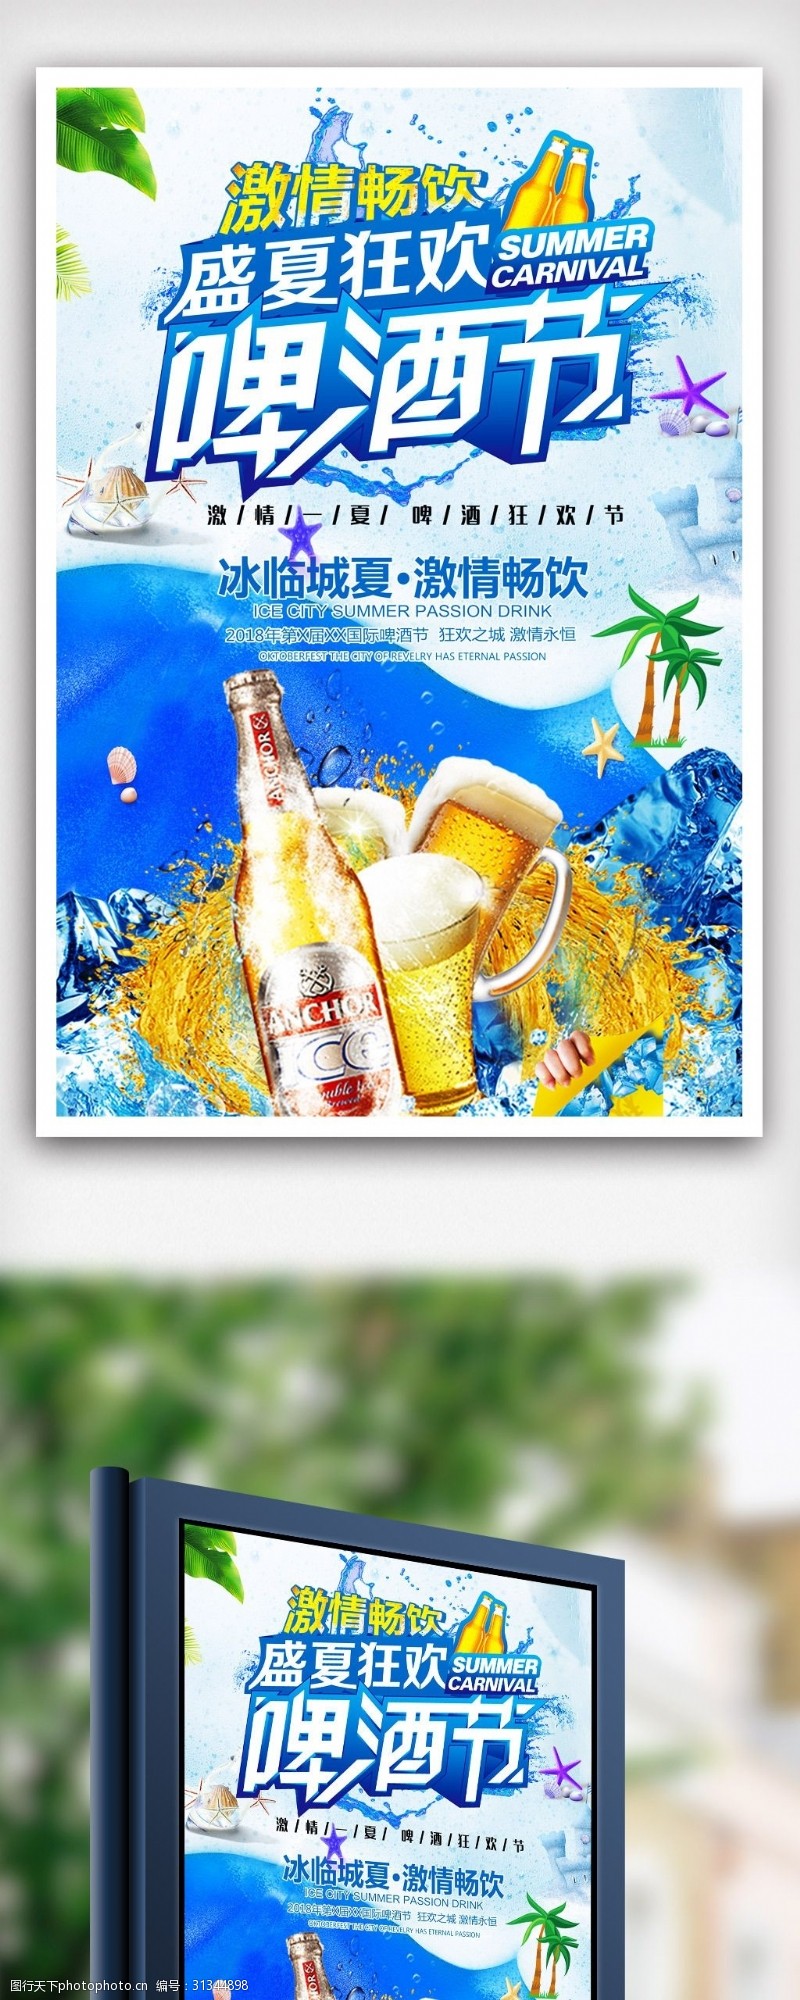 创意柠檬广告夏日狂欢啤酒节海报.psd